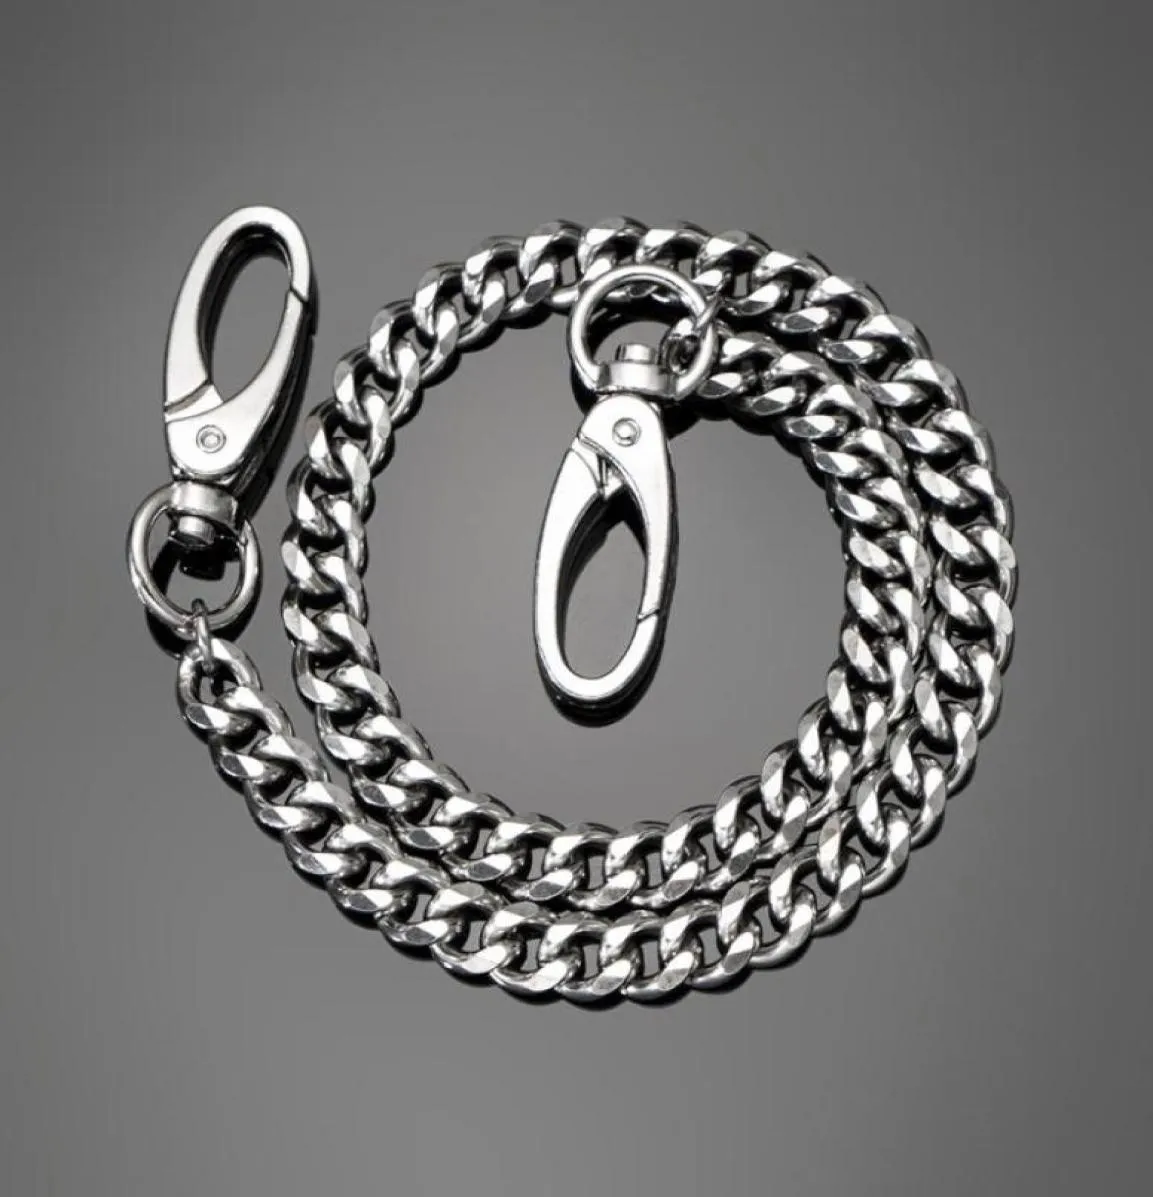 Łańcuchy punkowe metalowe spodnie ze stali nierdzewnej łańcuch talii mężczyźni kobiety kluczowe portfele dżinsy unisex hypo biżuteria prezent 6700599